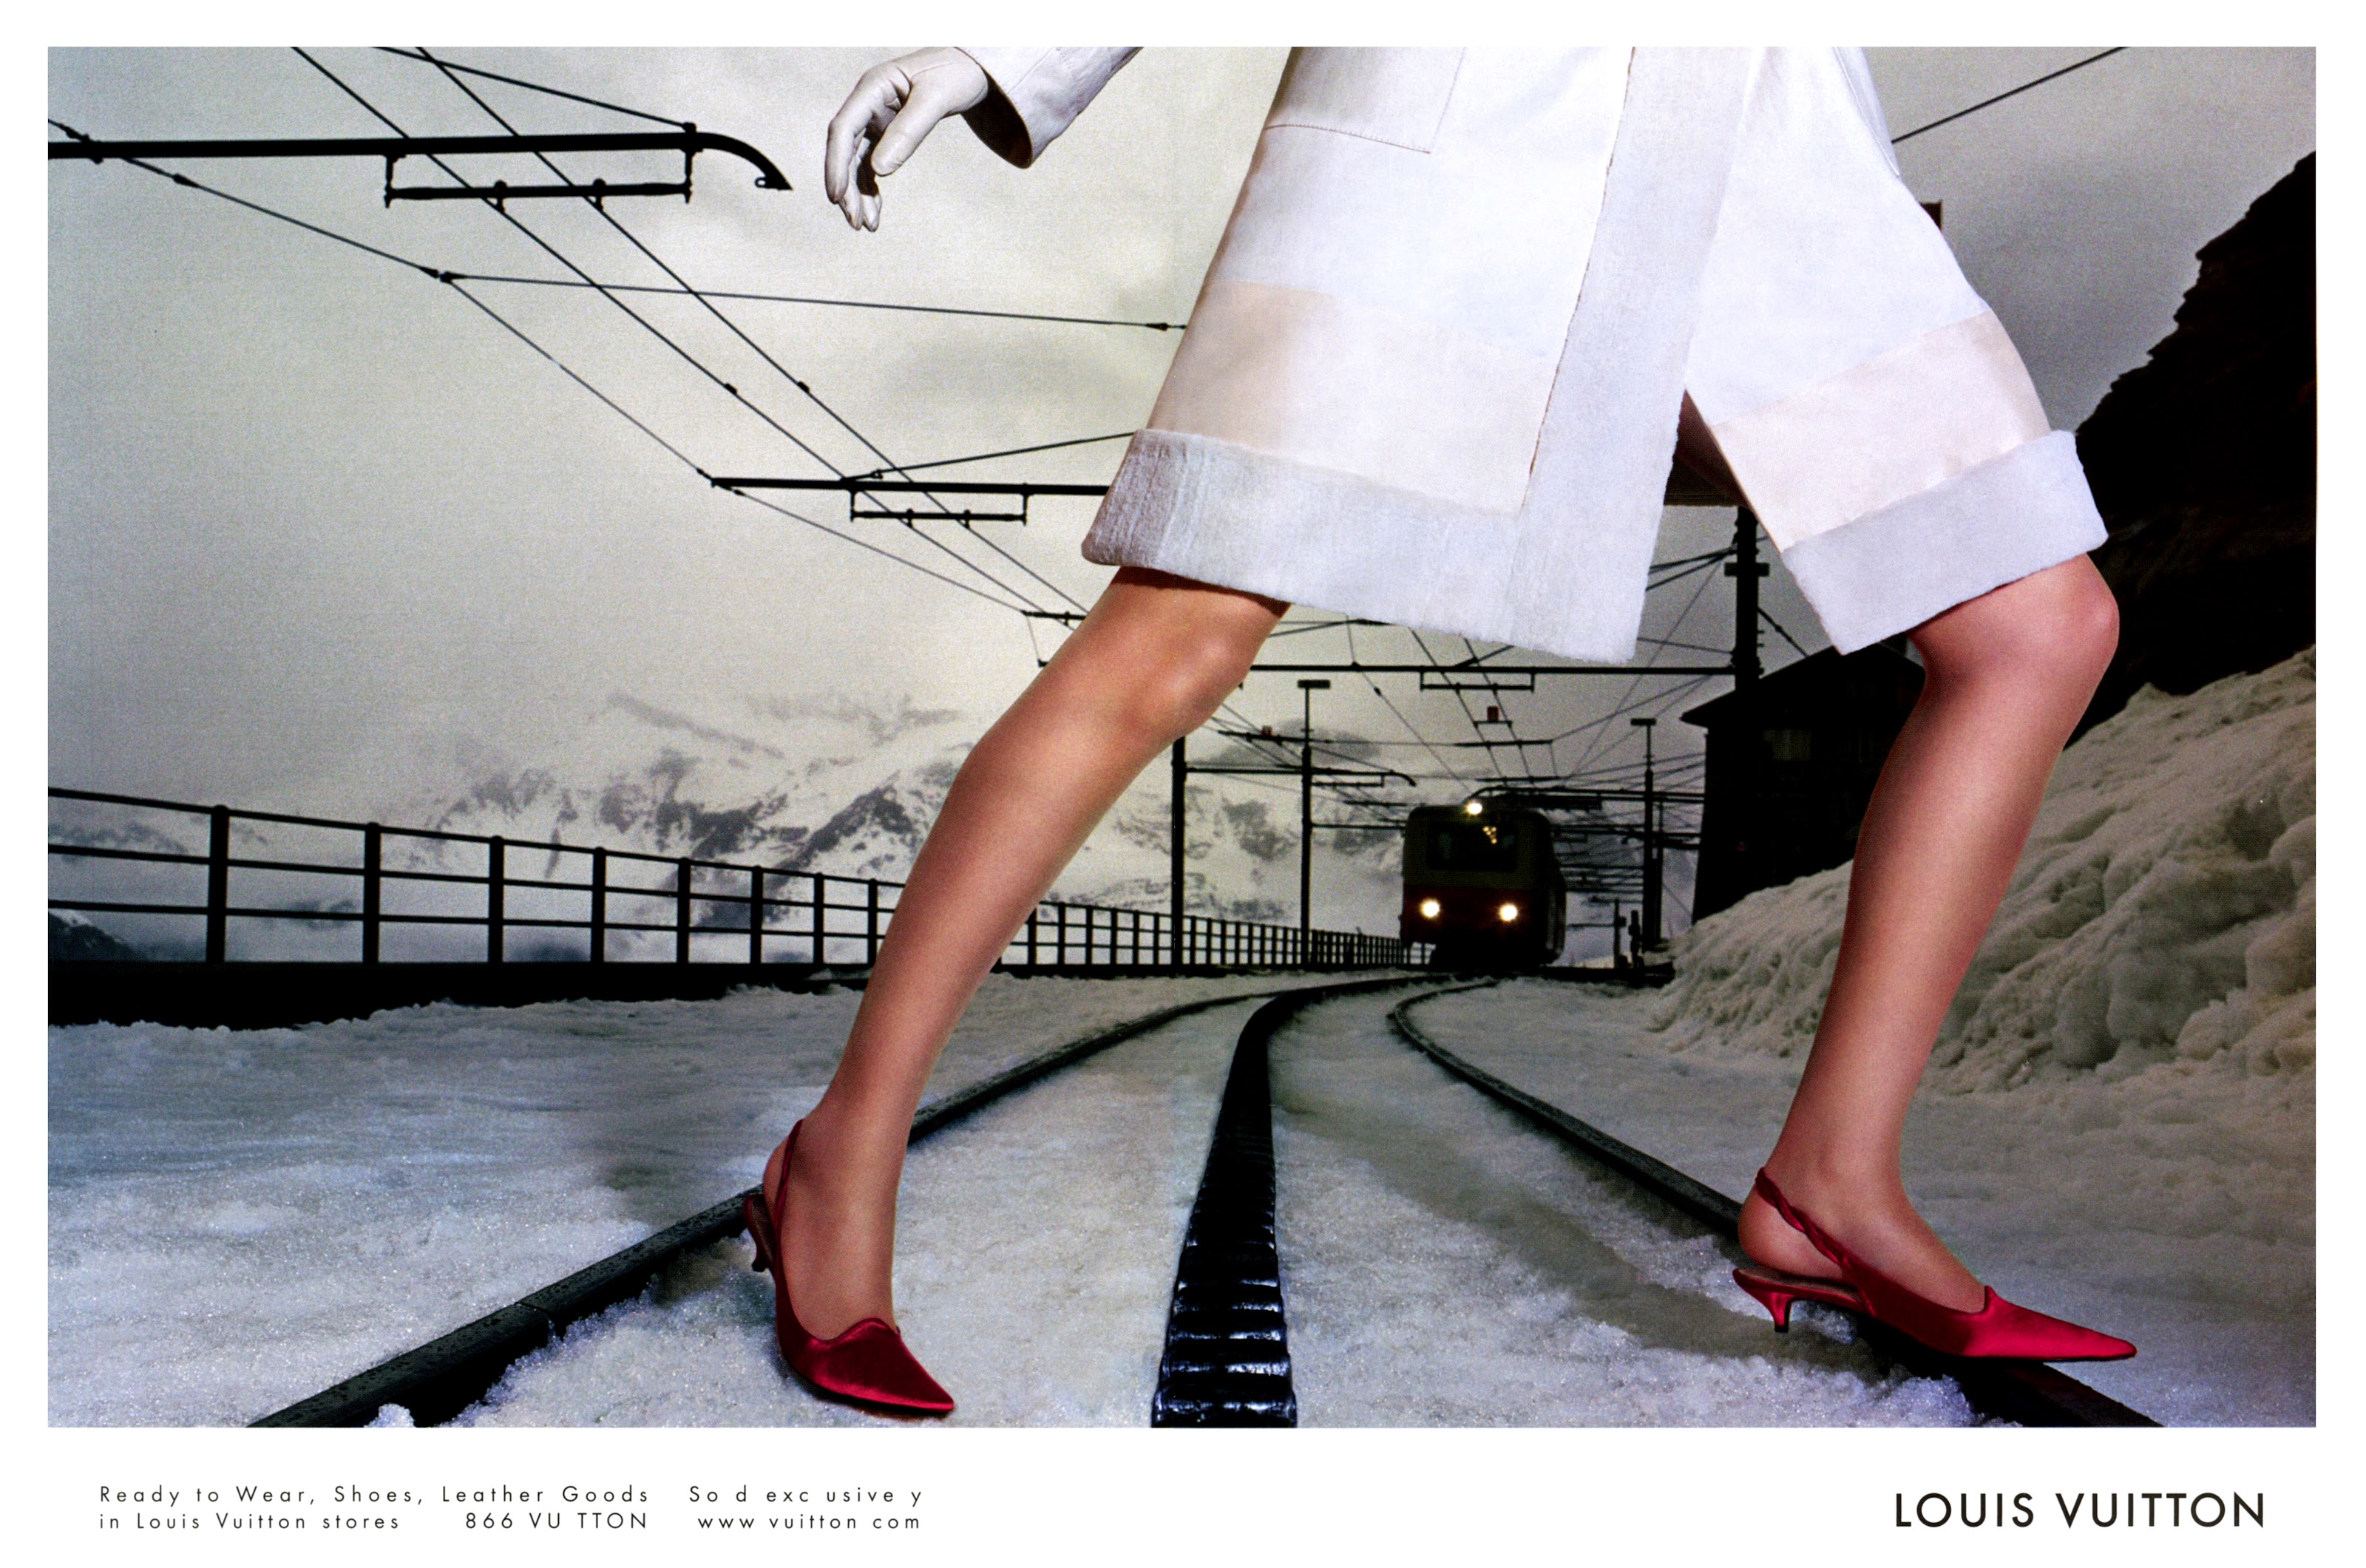 2002 Louis Vuitton: Eva Herzigova Vintage Print Ad